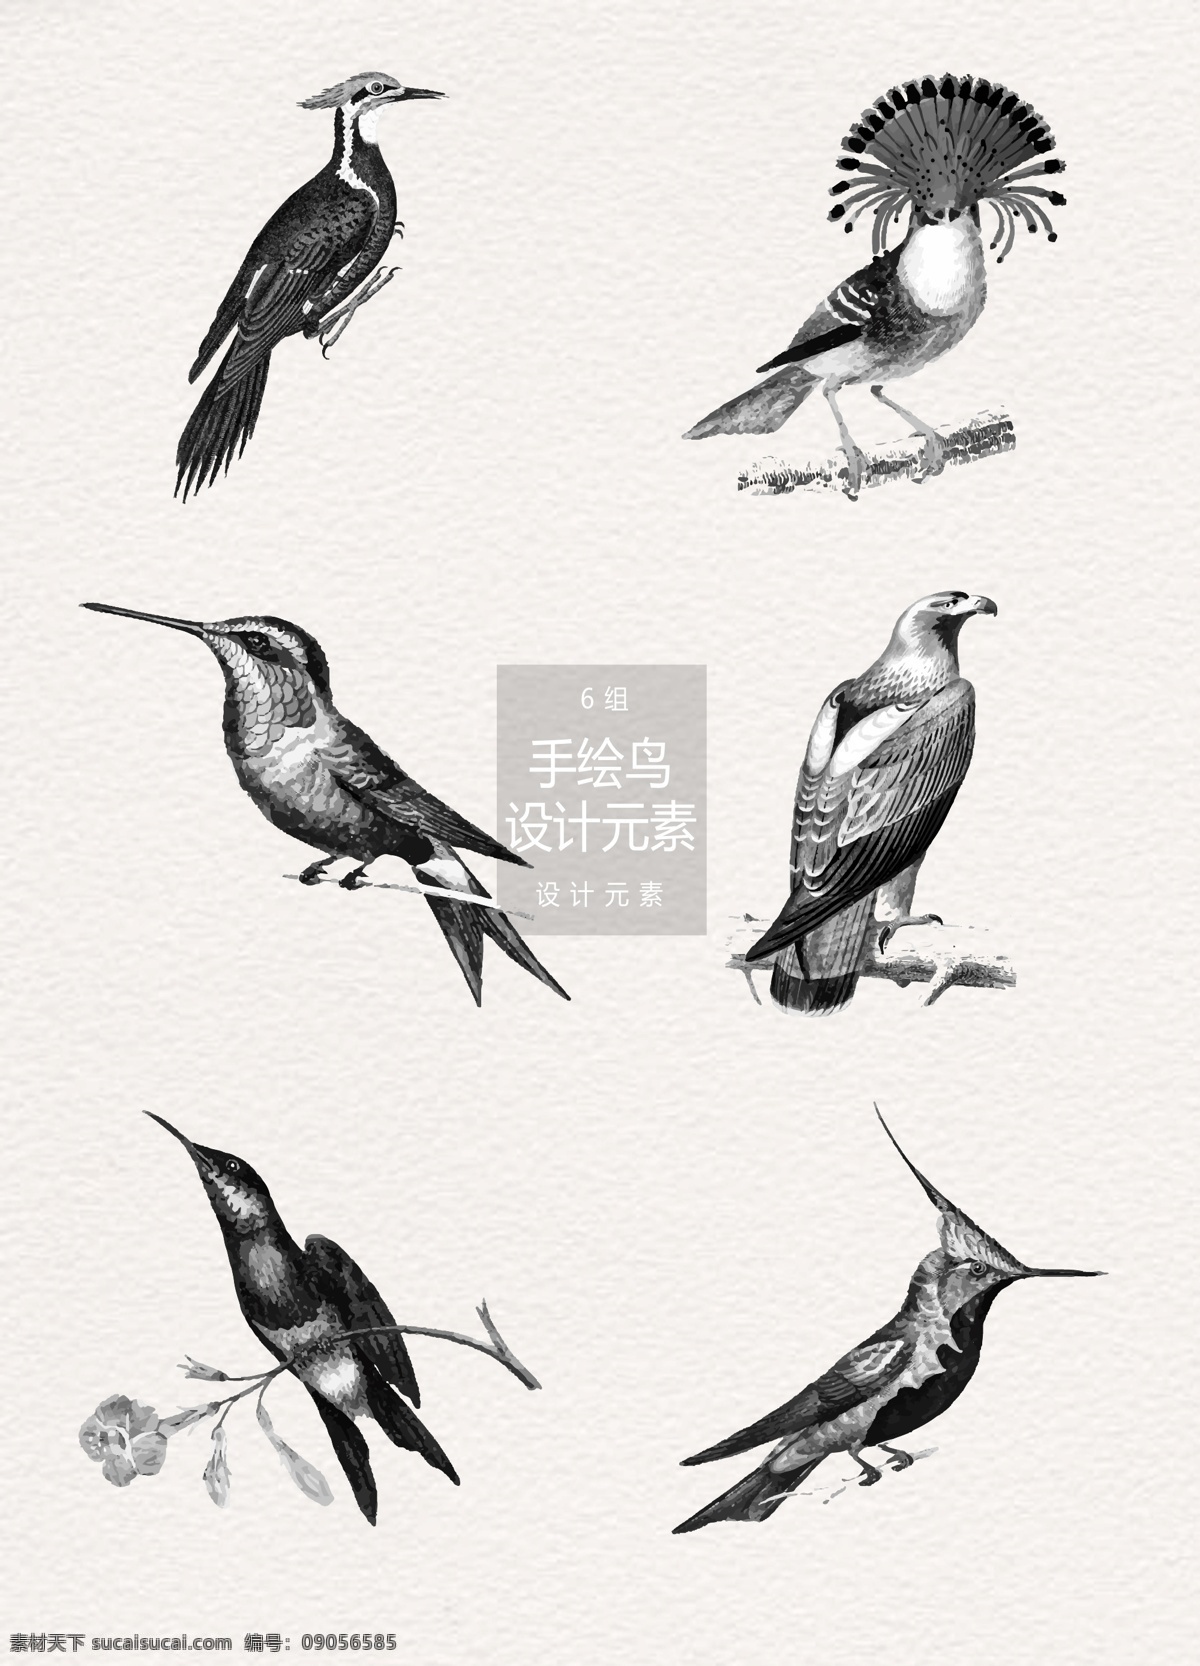 水墨 手绘 鸟 插画 元素 手绘鸟 鸟插画 水墨插画 小鸟